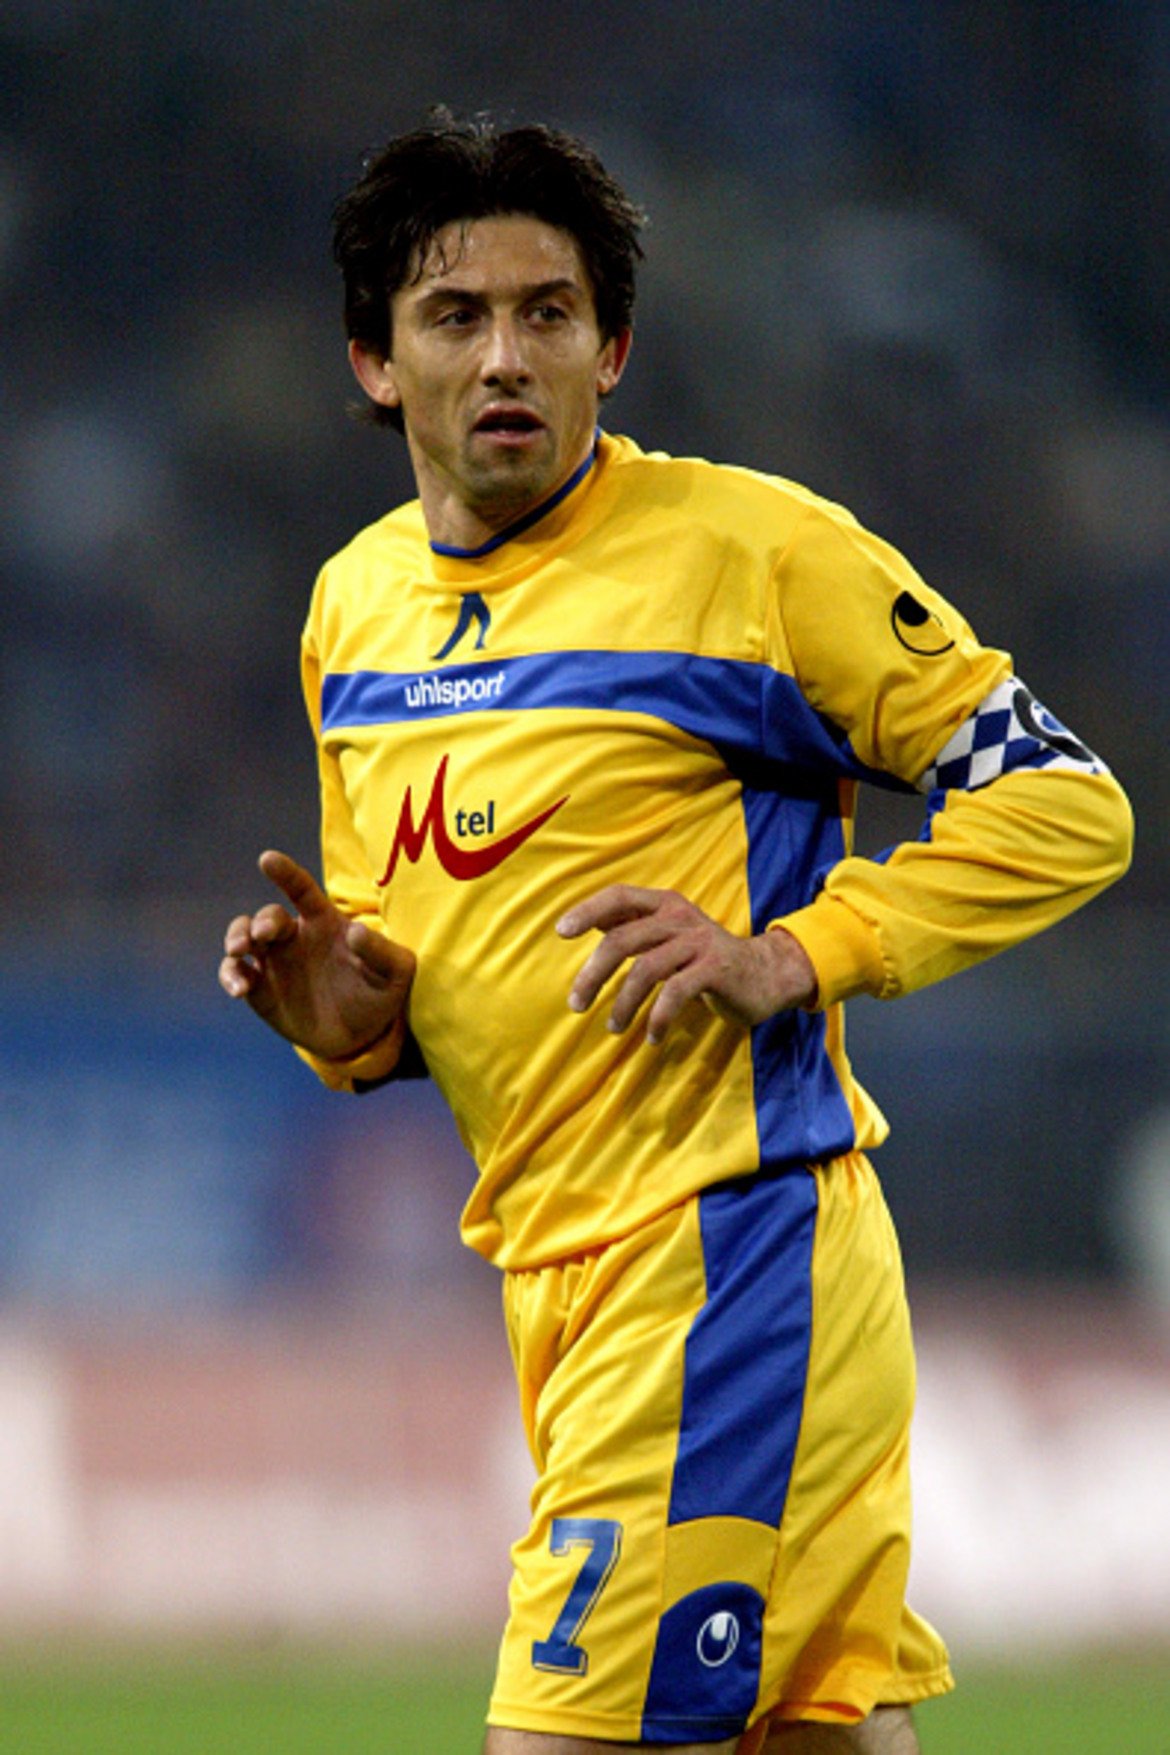 Даниел Боримиров (централен полузащитник) 
Кариерата на Боримиров бе обвързана с два клуба, в чиято легенда се превърна – Левски и Мюнхен 1860. Последният герой от лятото на 1994-а се завърна при „сините“ през 2004-а, за да участва в написването на най-славните страници в модерната история на клуба. Бе незаменим титуляр във всичките 11 мача от Купата на УЕФА, в които участва през сезон 2005-06, и вкара 2 гола (срещу Удинезе и срещу Шалке). След като прекрати кариерата си през 2008-а, Боримиров се захвана с различни ръководни функции в Левски. Води и школата на клуба, а сега е спортен директор на „сините“ и се надява отново да стане част от поход в евротурнирите.
